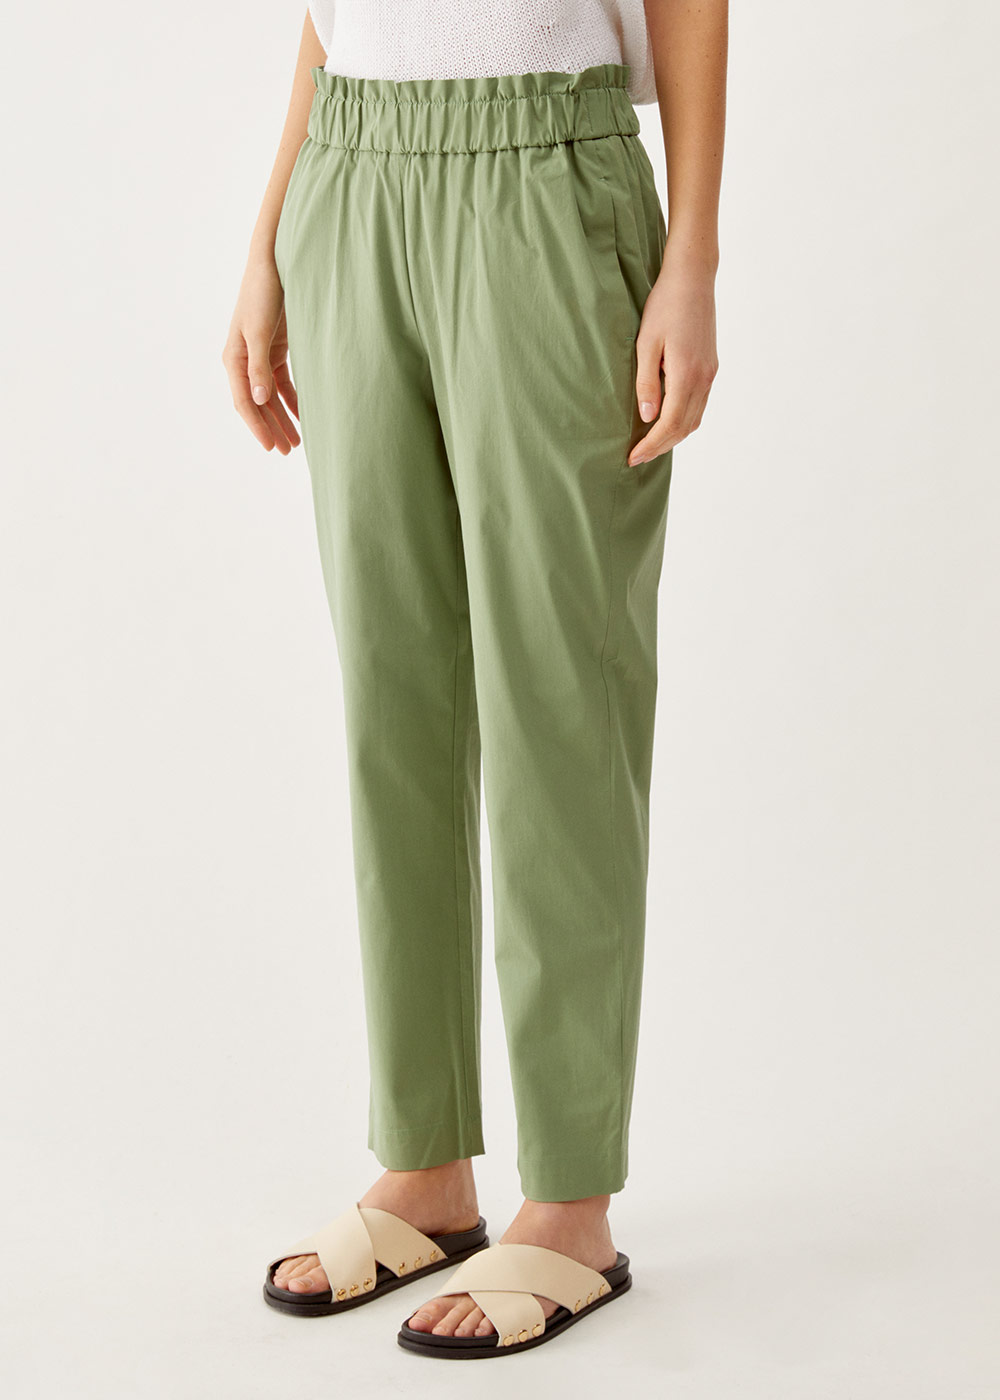 Pantalone carota in poplin di cotone stretch, verde 001